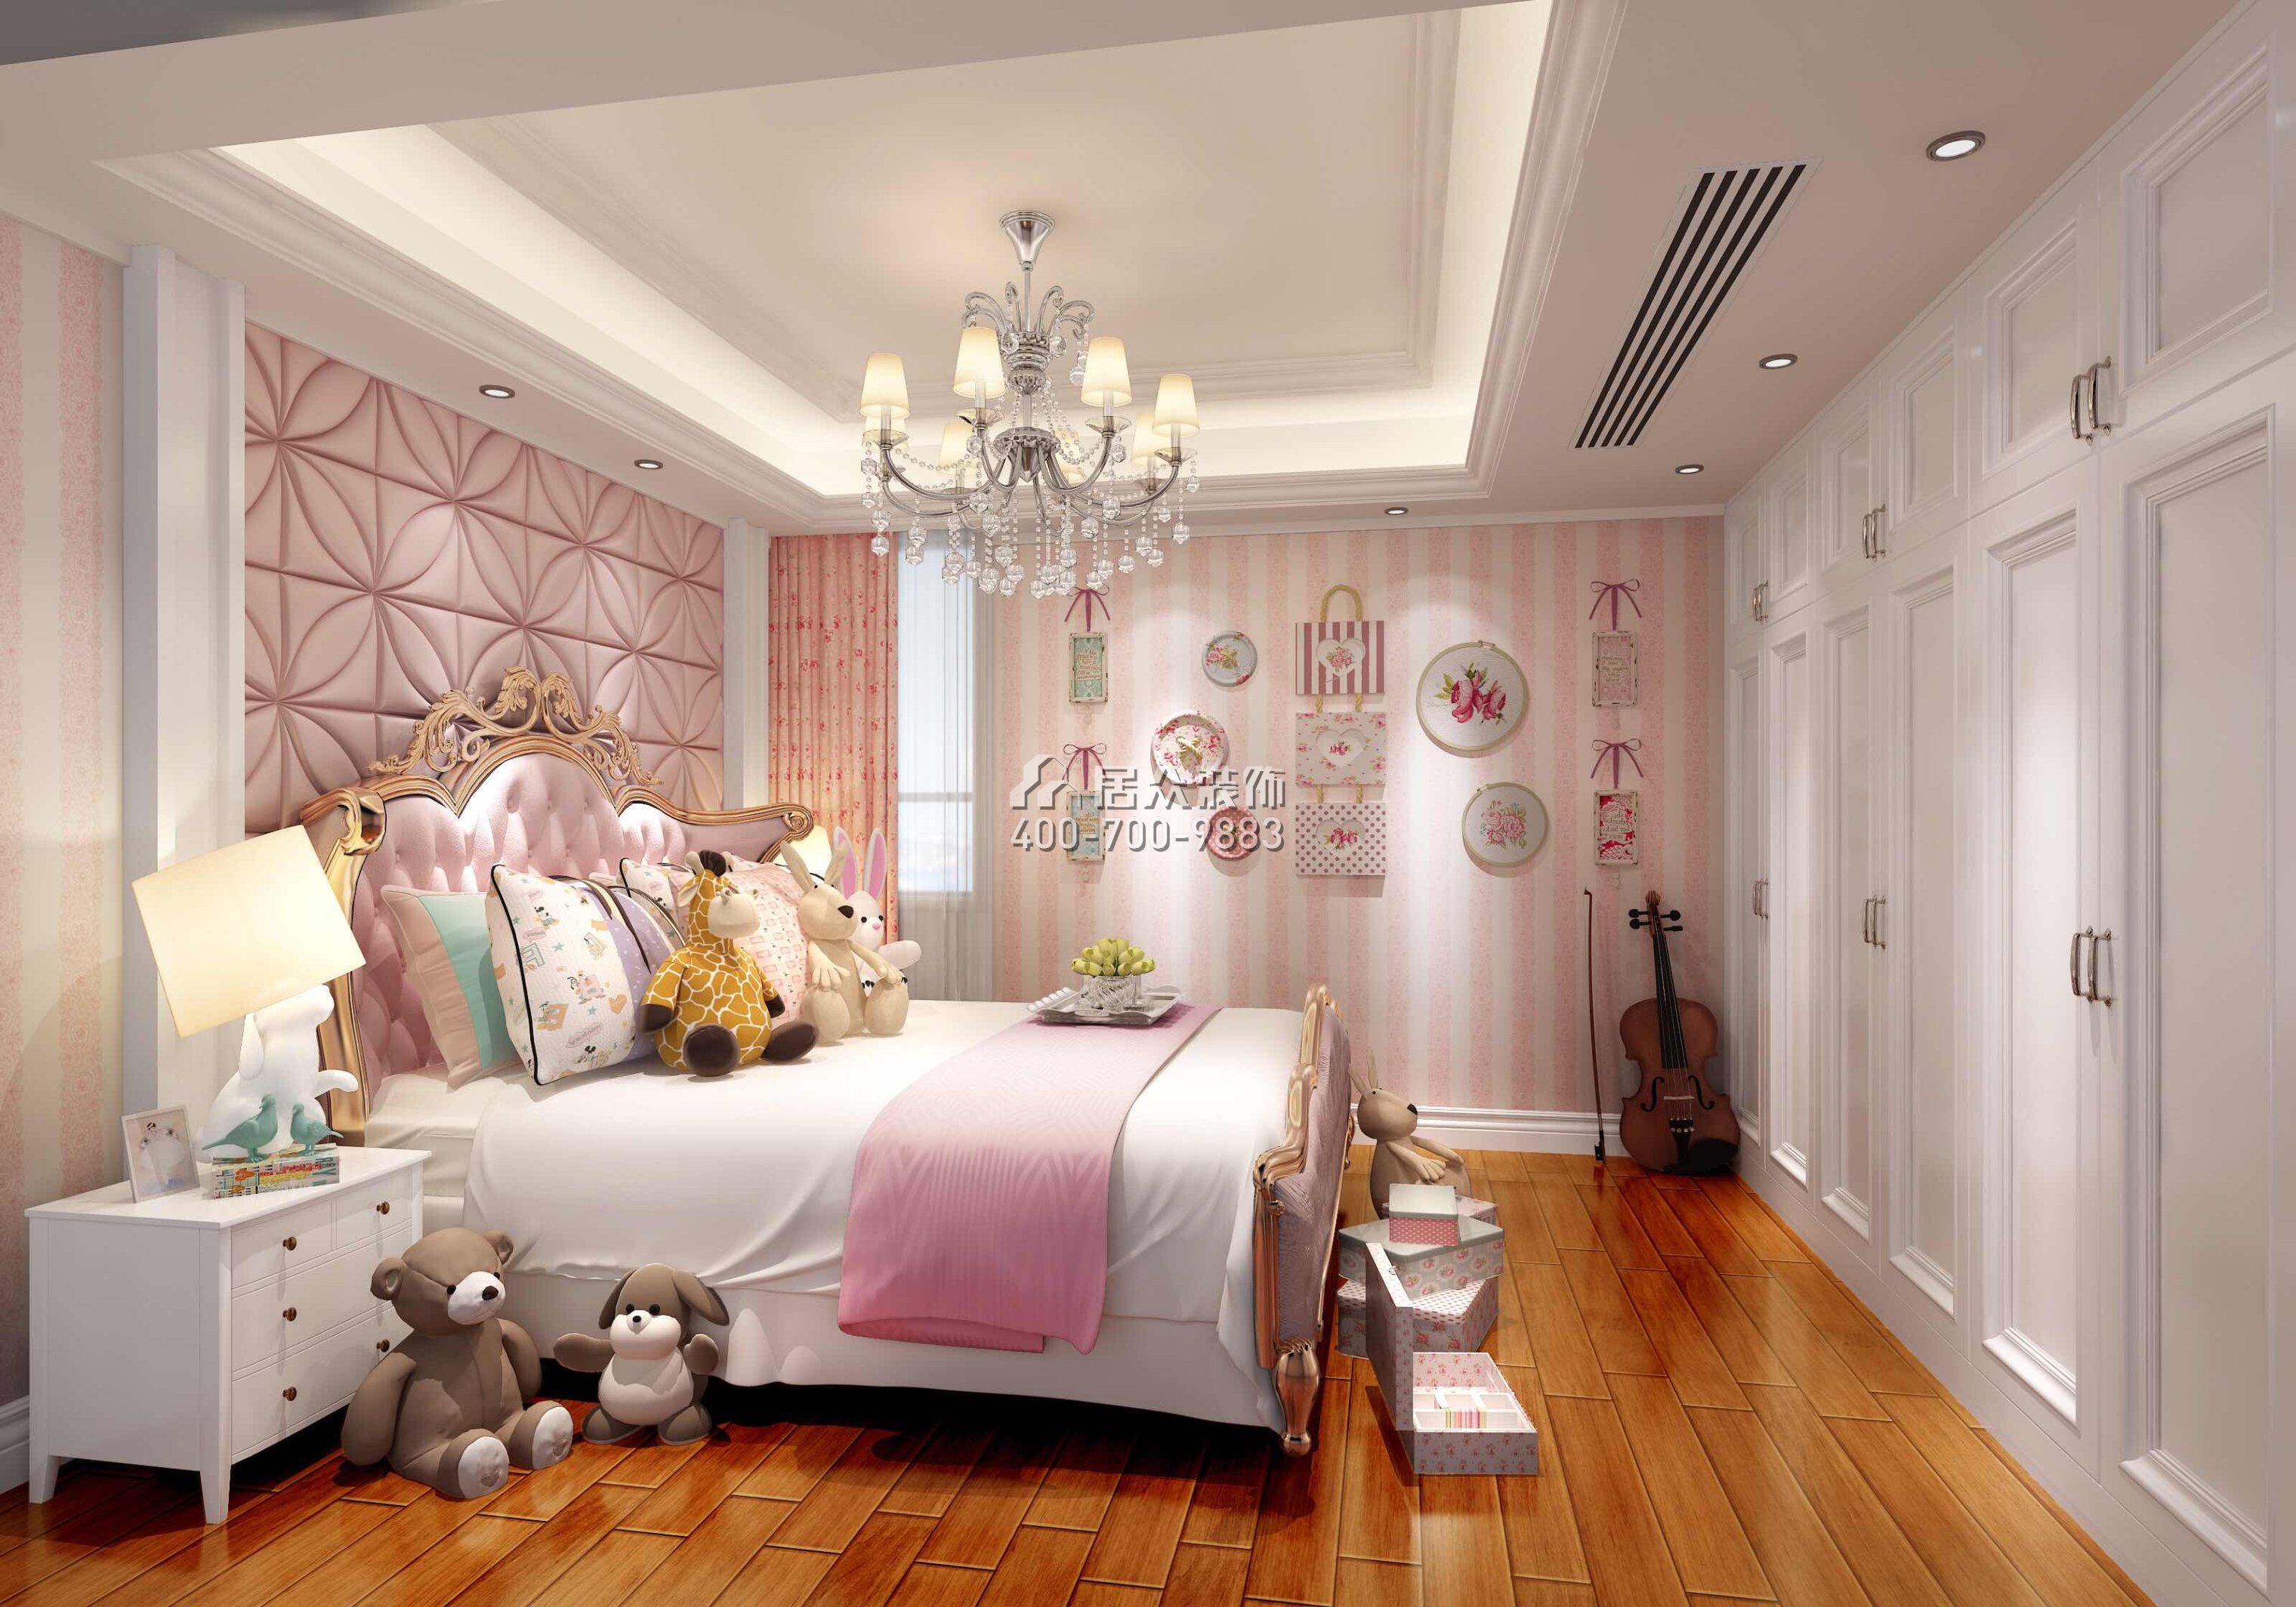 美加广场270平方米欧式风格复式户型卧室装修效果图